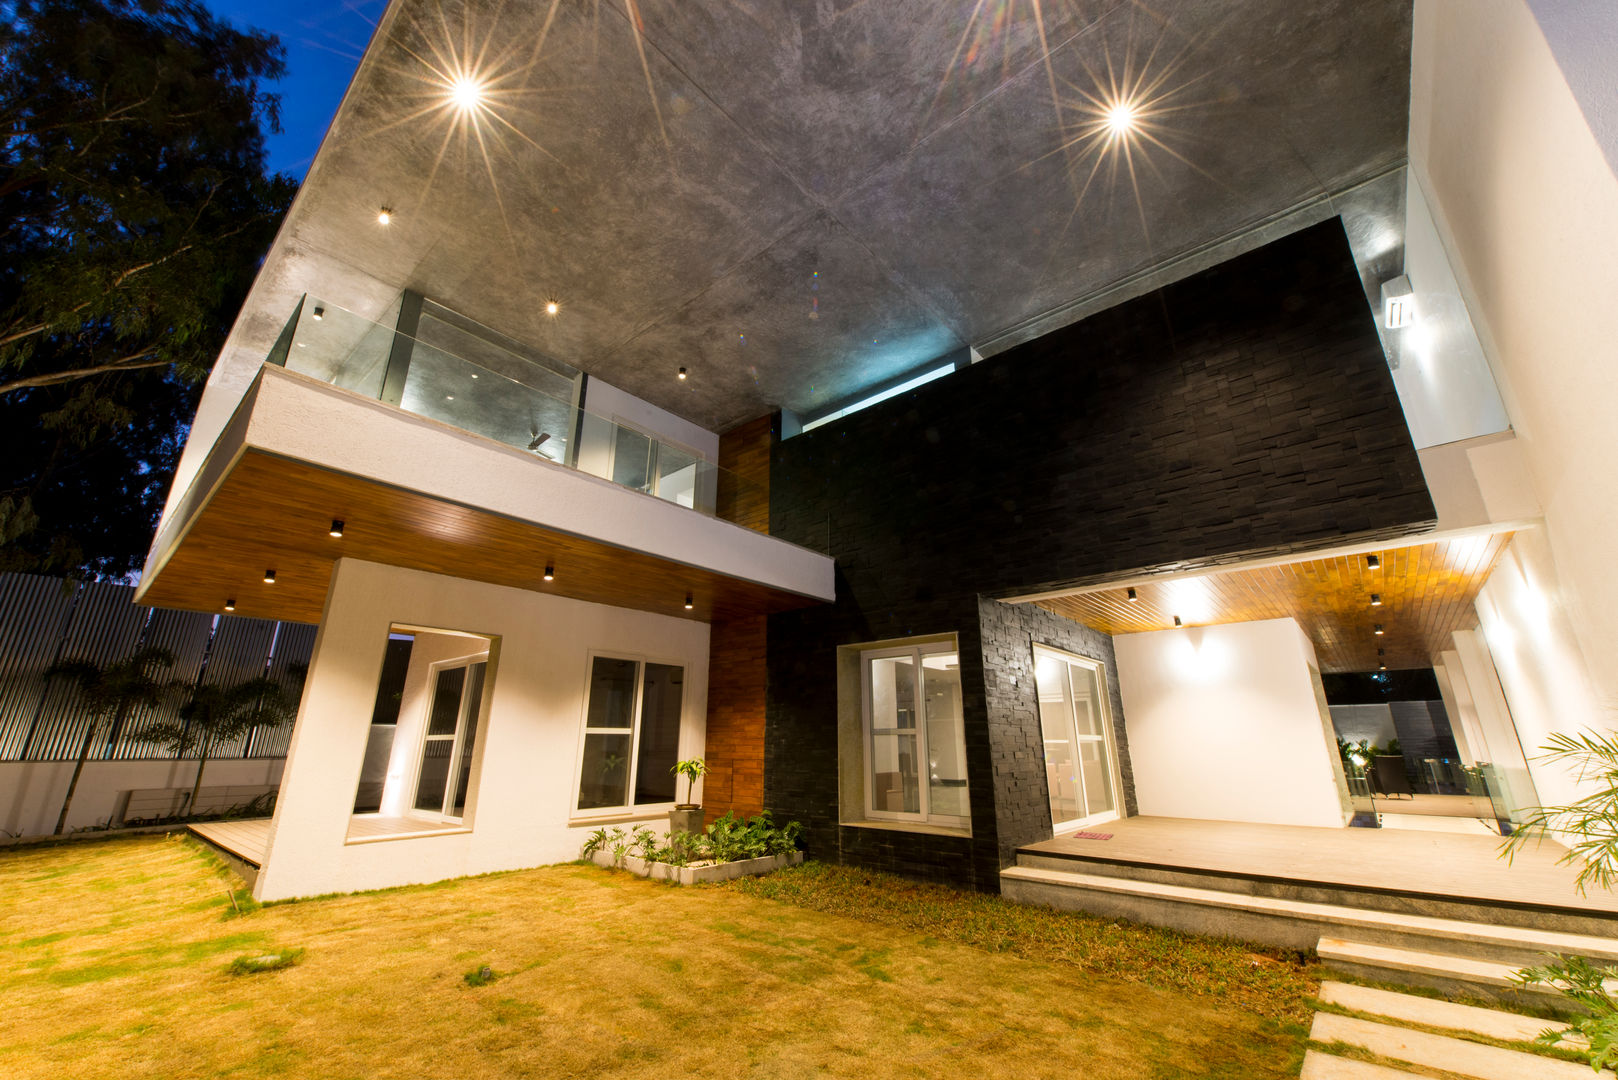 Residence at H2, Balan & Nambisan Architects Balan & Nambisan Architects 現代房屋設計點子、靈感 & 圖片